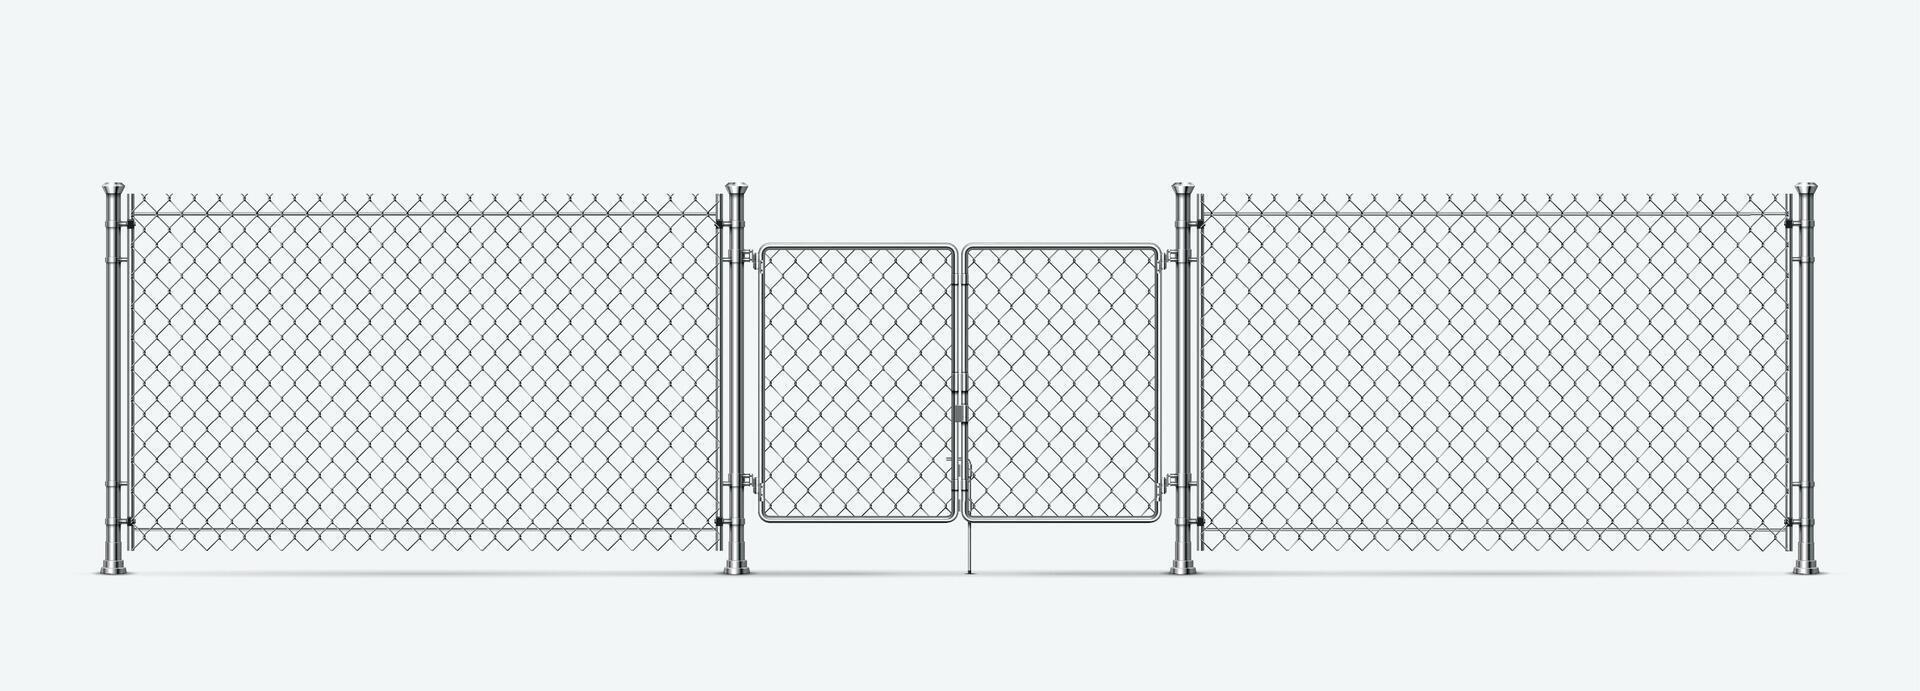 realista acero cable cerca con puertas y metal columnas barrera cadena enlace malla con puerta. 3d prisión o militar cable frontera vector elemento